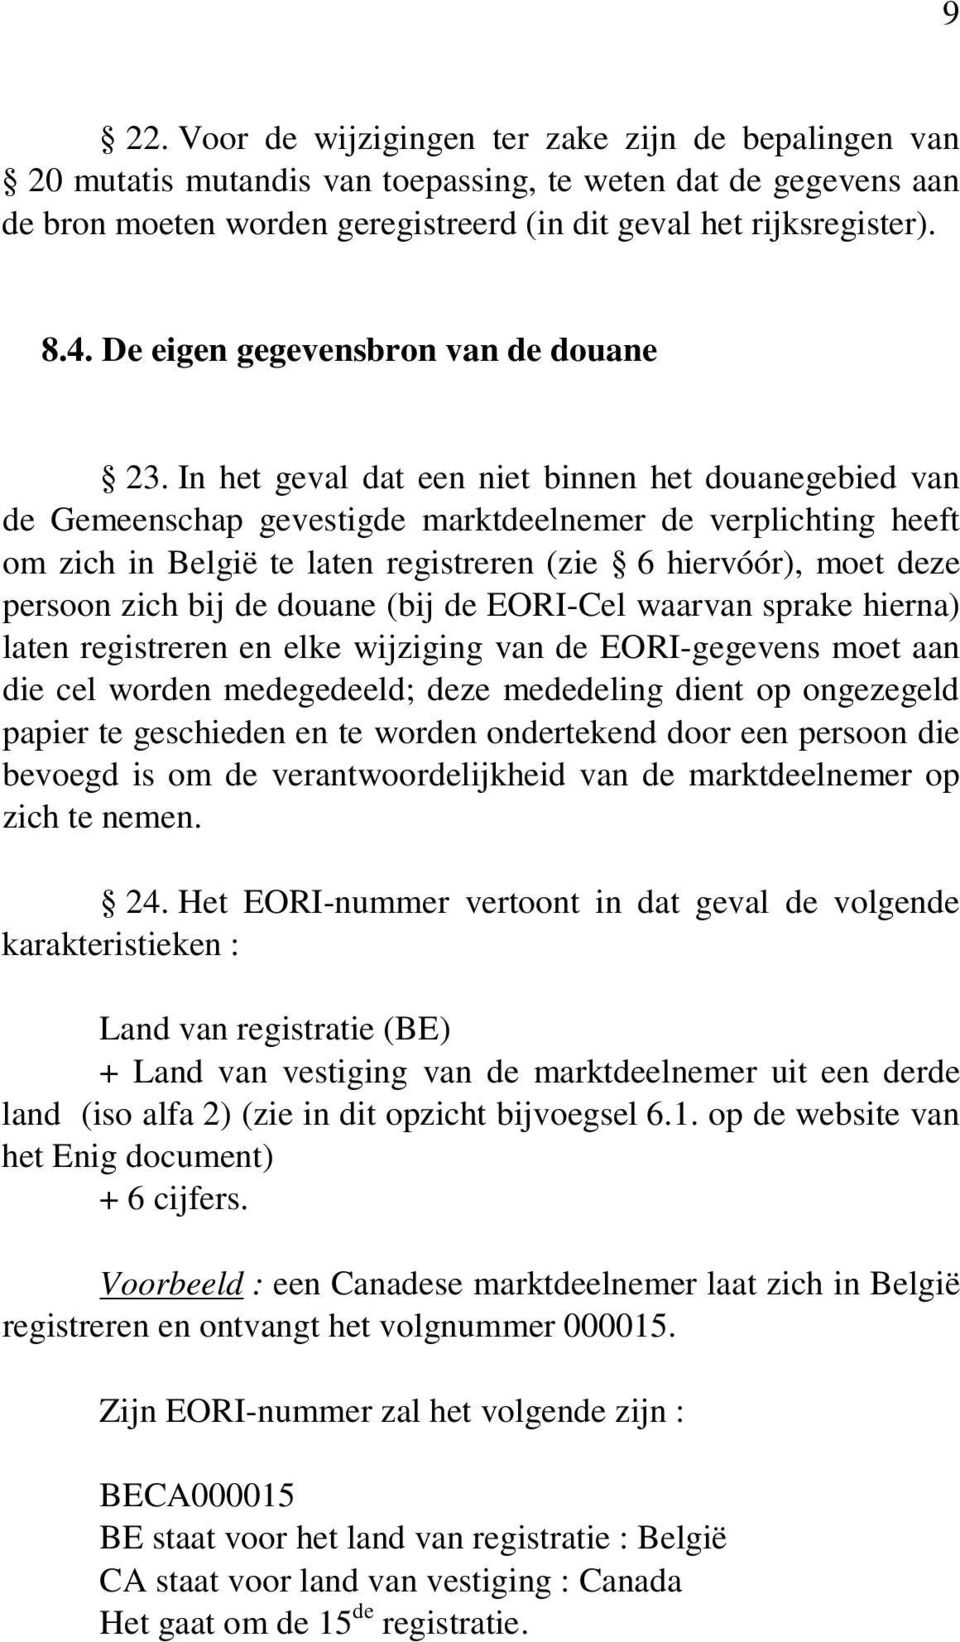 In het geval dat een niet binnen het douanegebied van de Gemeenschap gevestigde marktdeelnemer de verplichting heeft om zich in België te laten registreren (zie 6 hiervóór), moet deze persoon zich